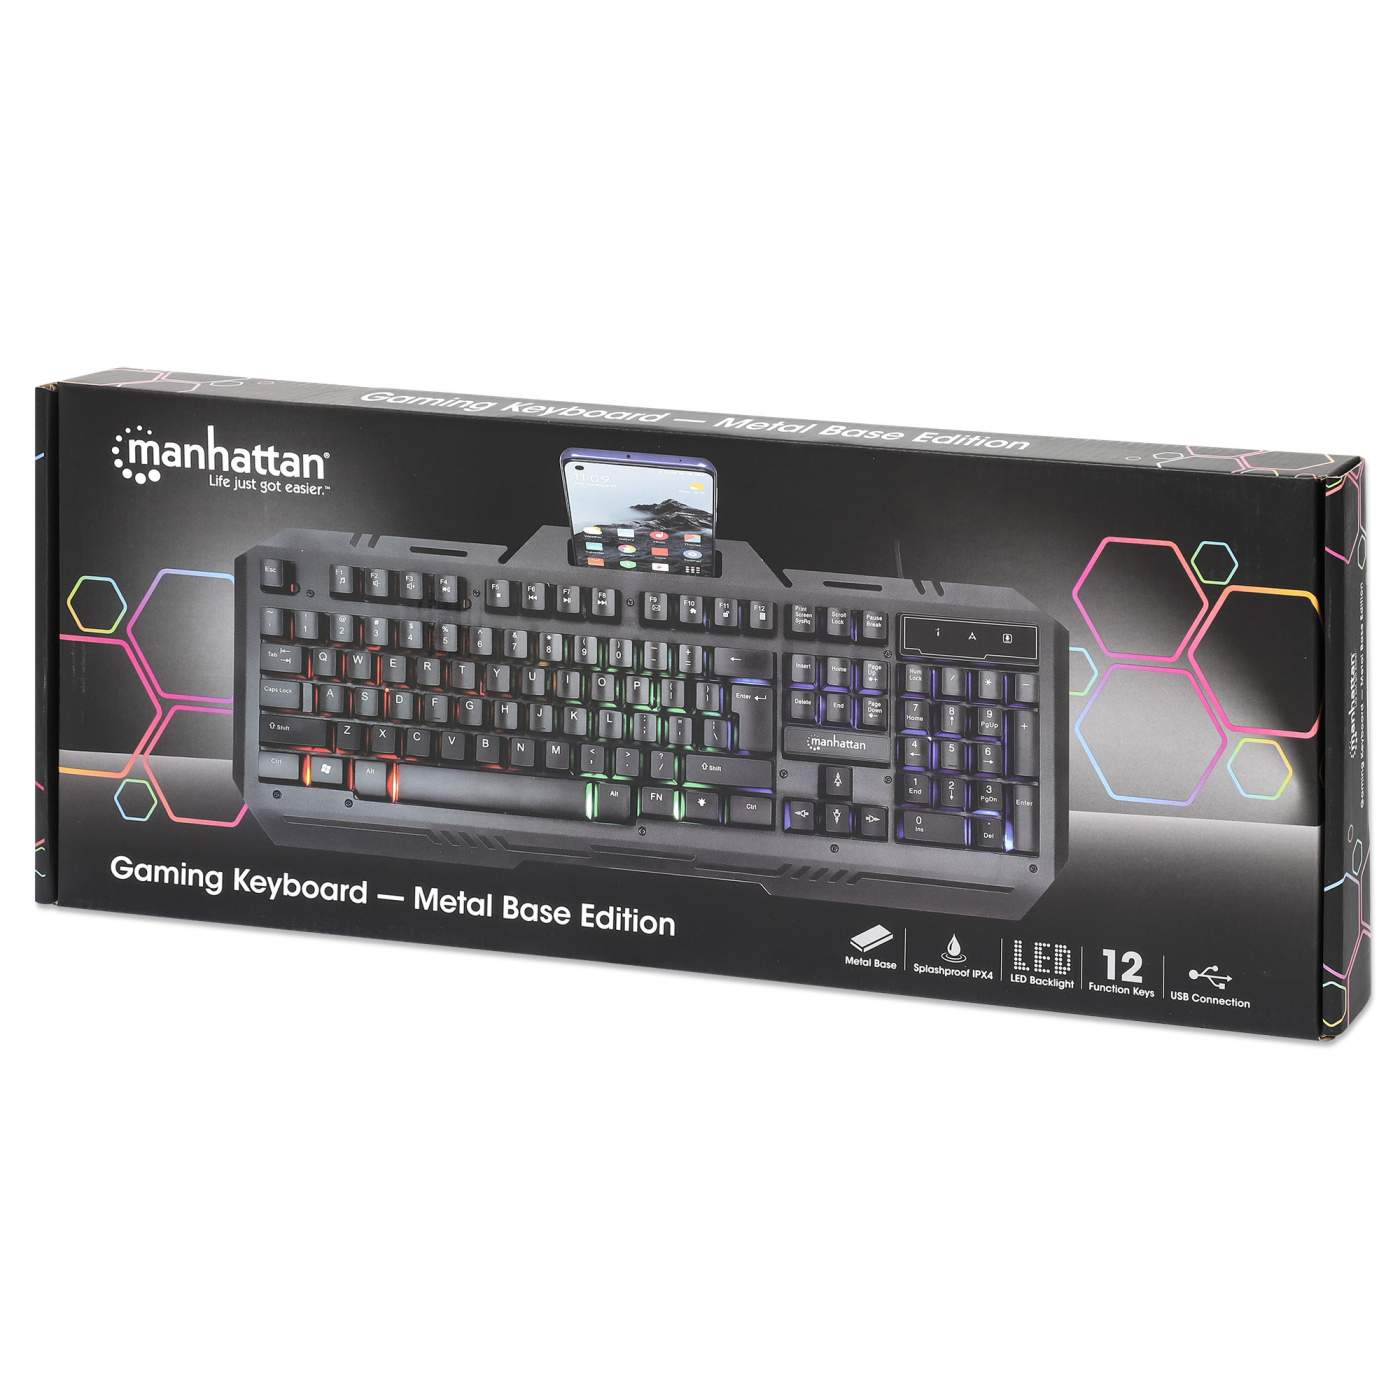 Gaming Keyboard - Metal Base Edition Packaging Image 2